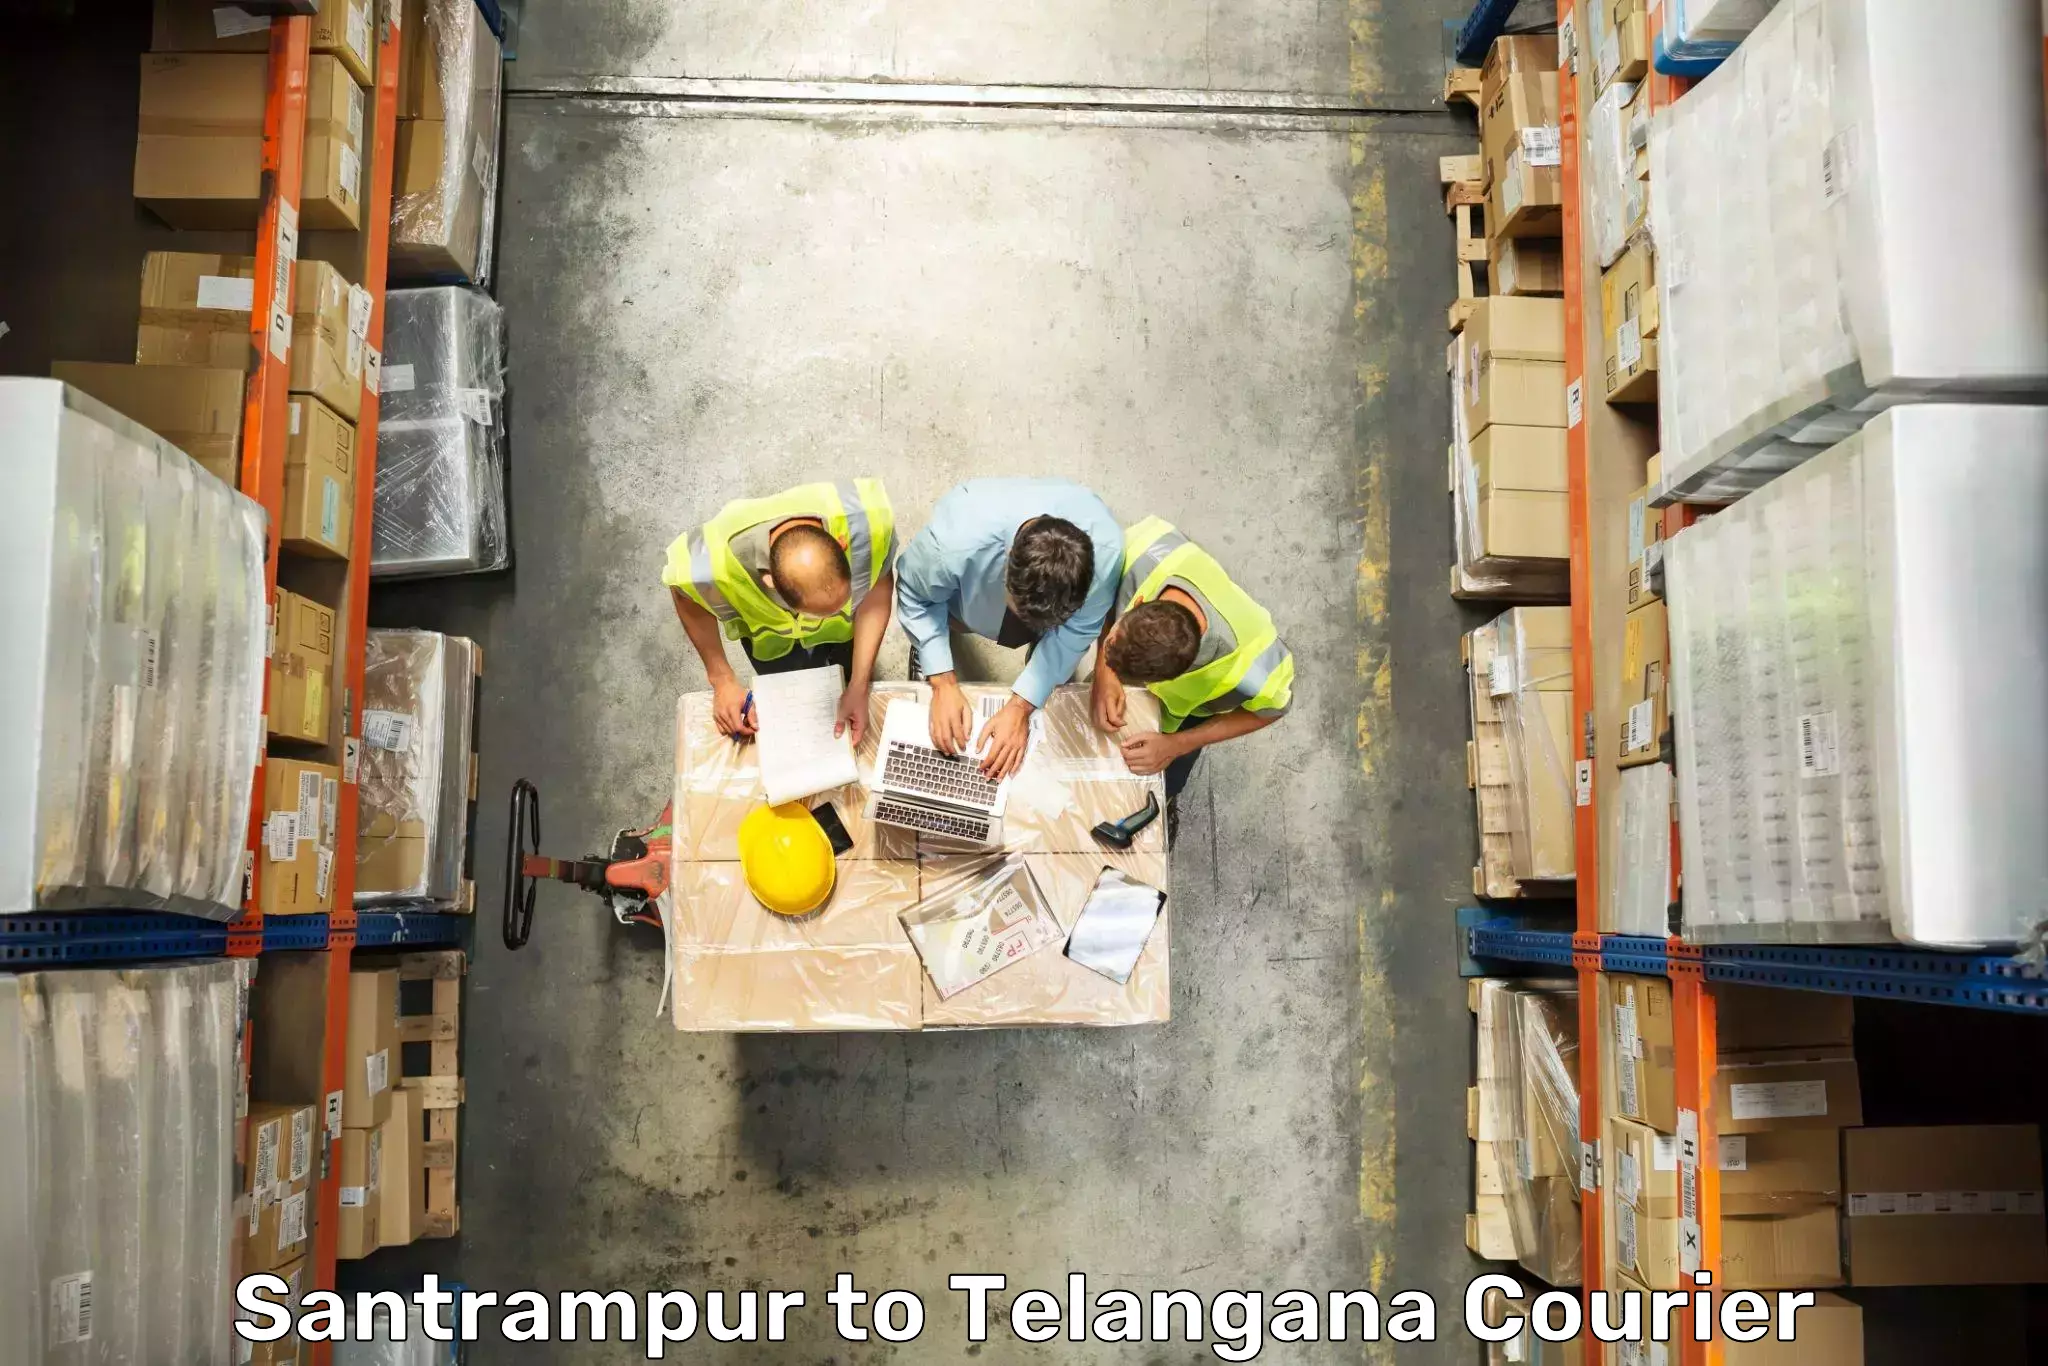 Baggage shipping service Santrampur to Telangana